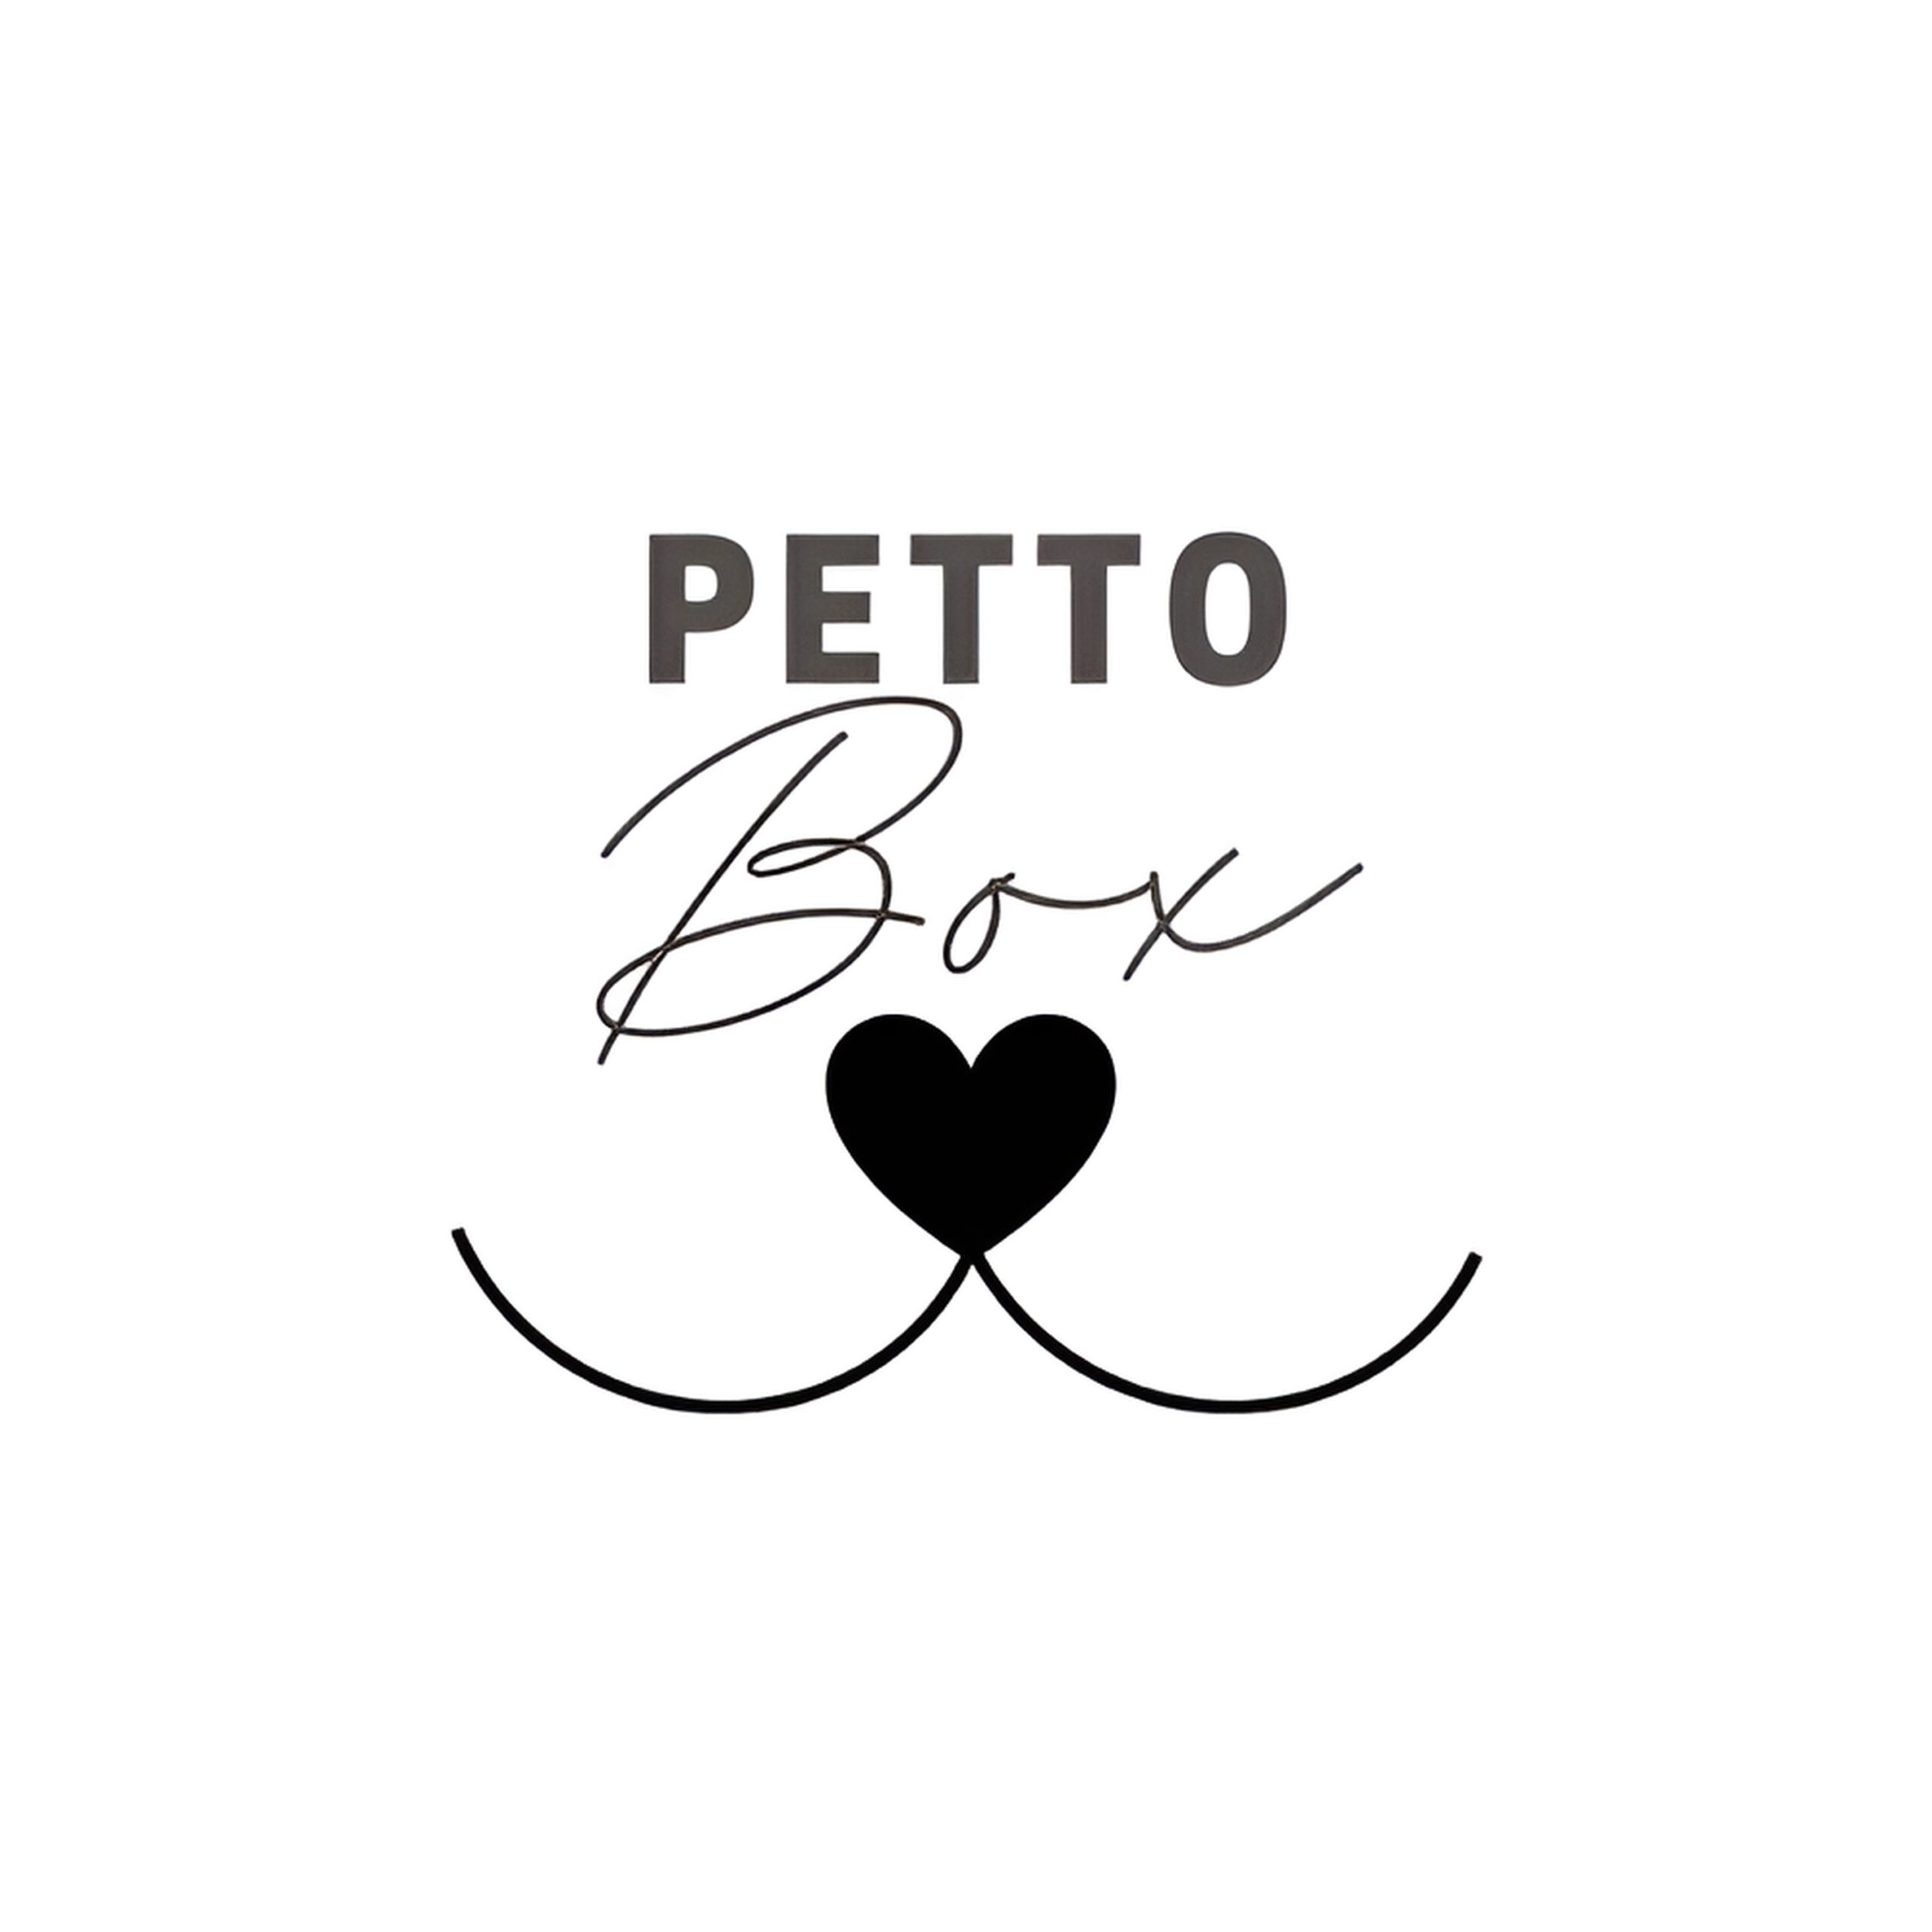 petto_box